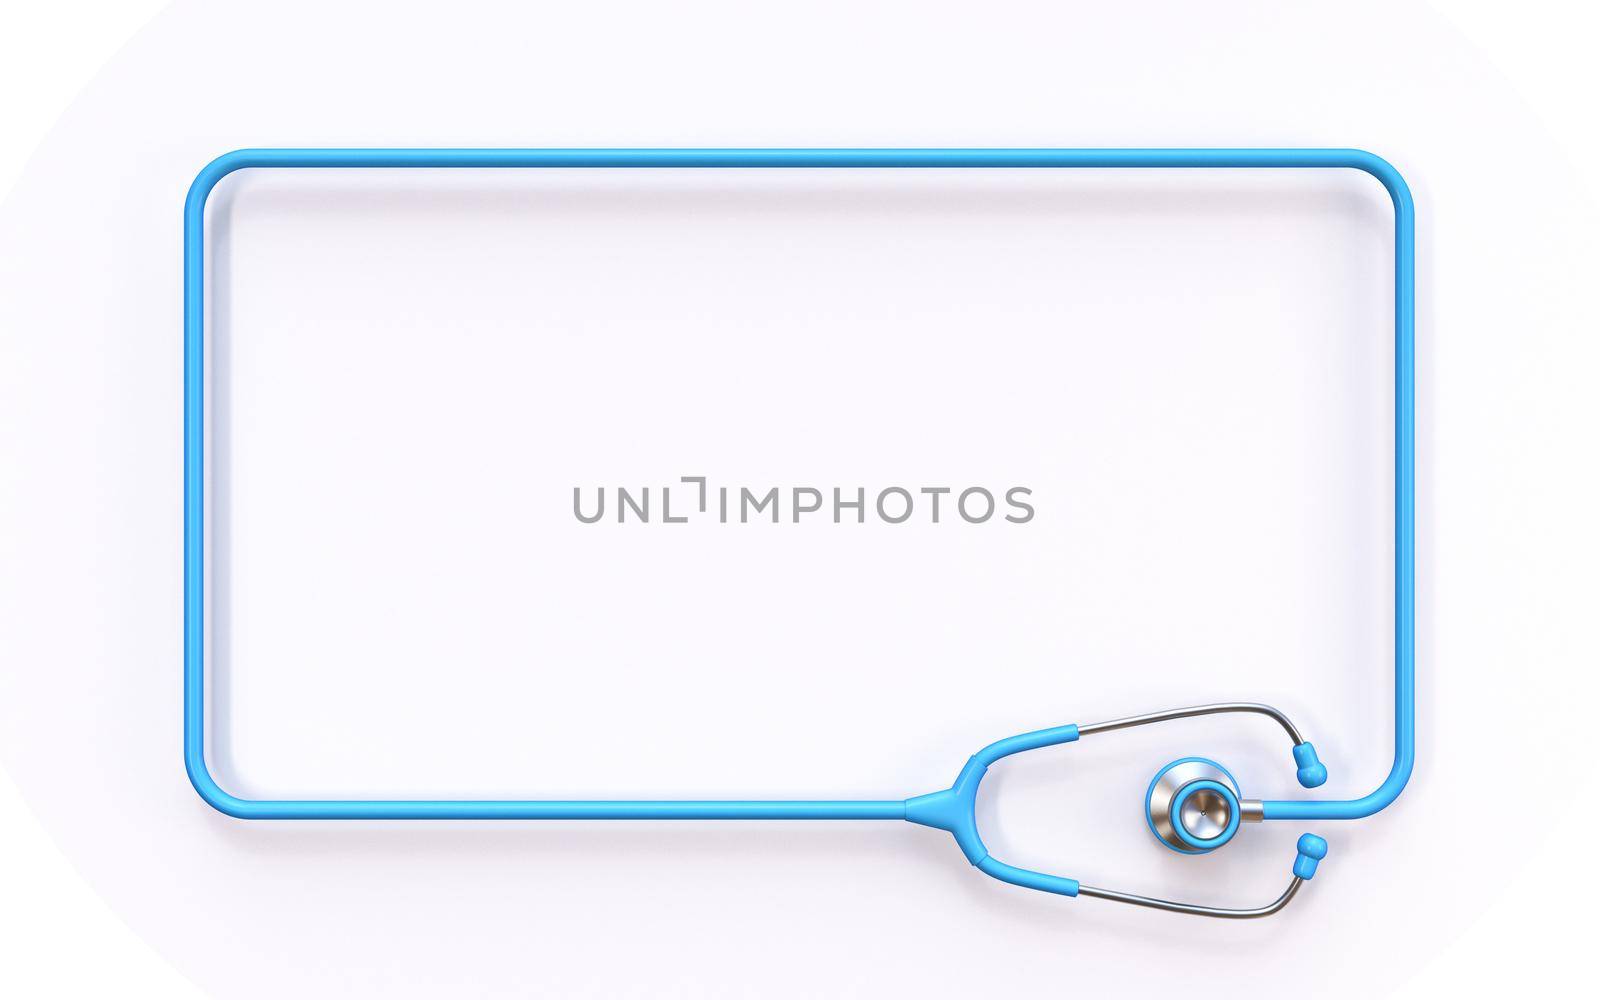 Rectangular stethoscope frame 3D by djmilic